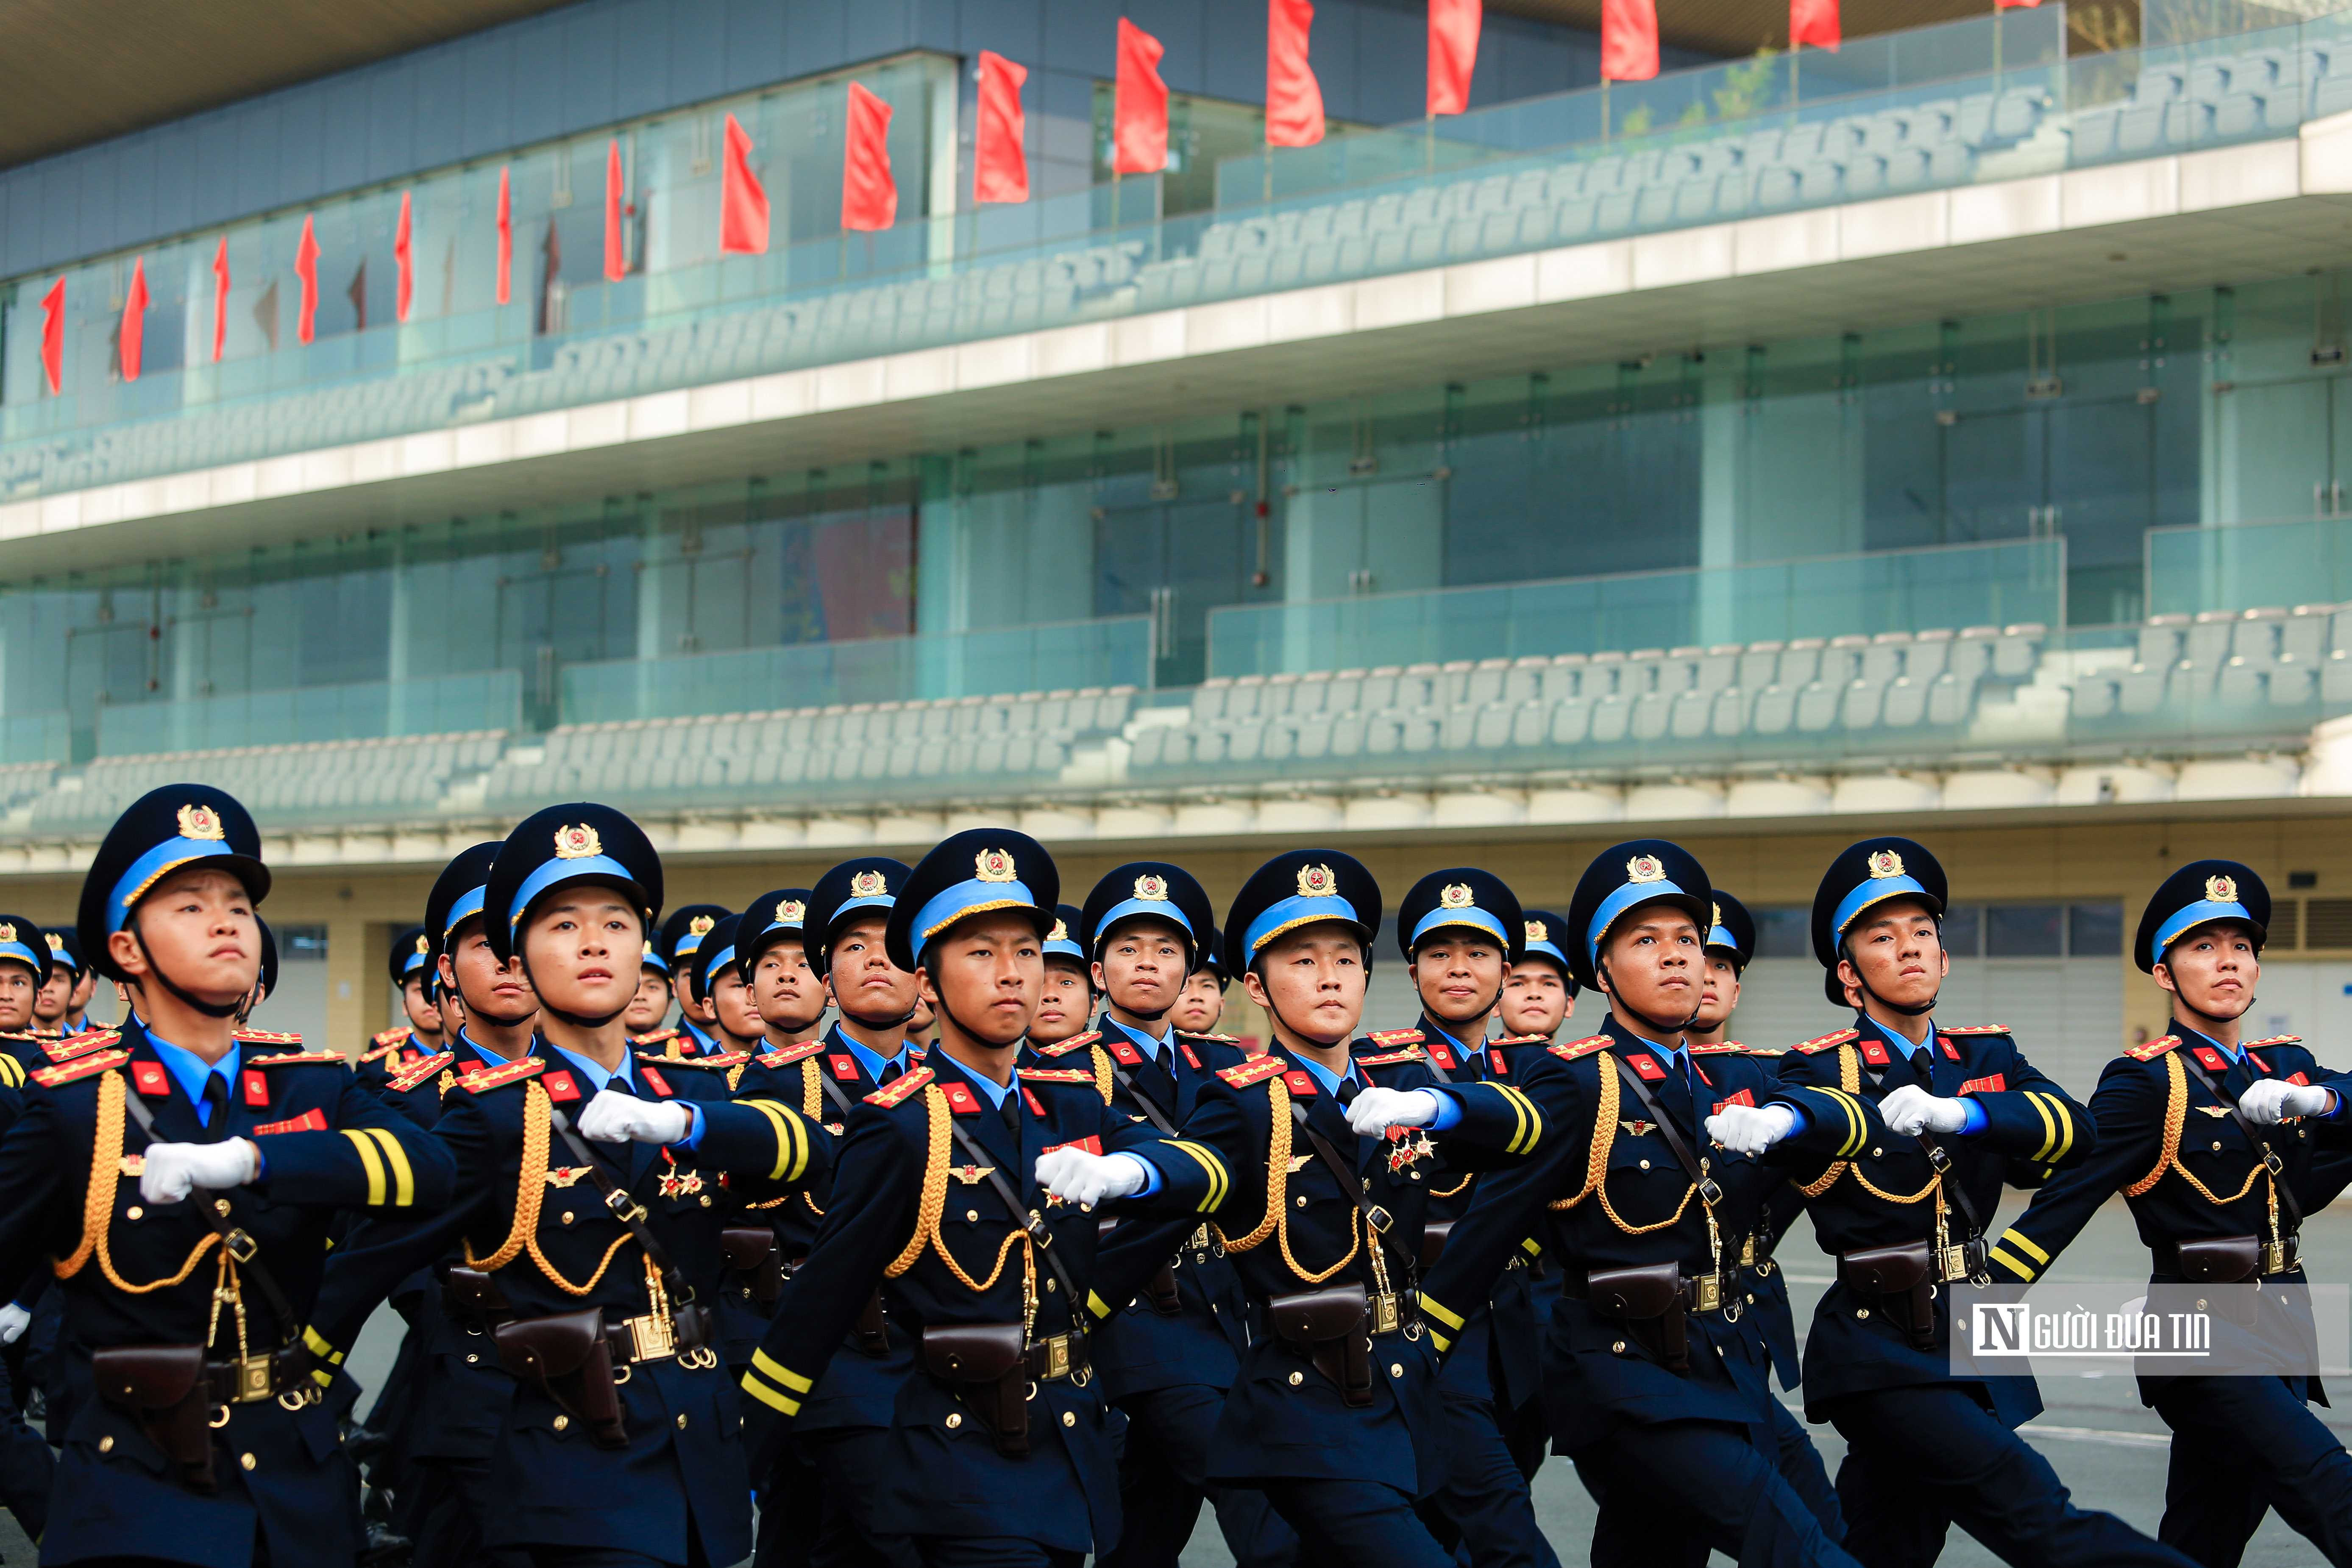 Sự kiện - Mãn nhãn xem màn diễu hành oai nghiêm của lực lượng Cảnh sát cơ động (Hình 9).